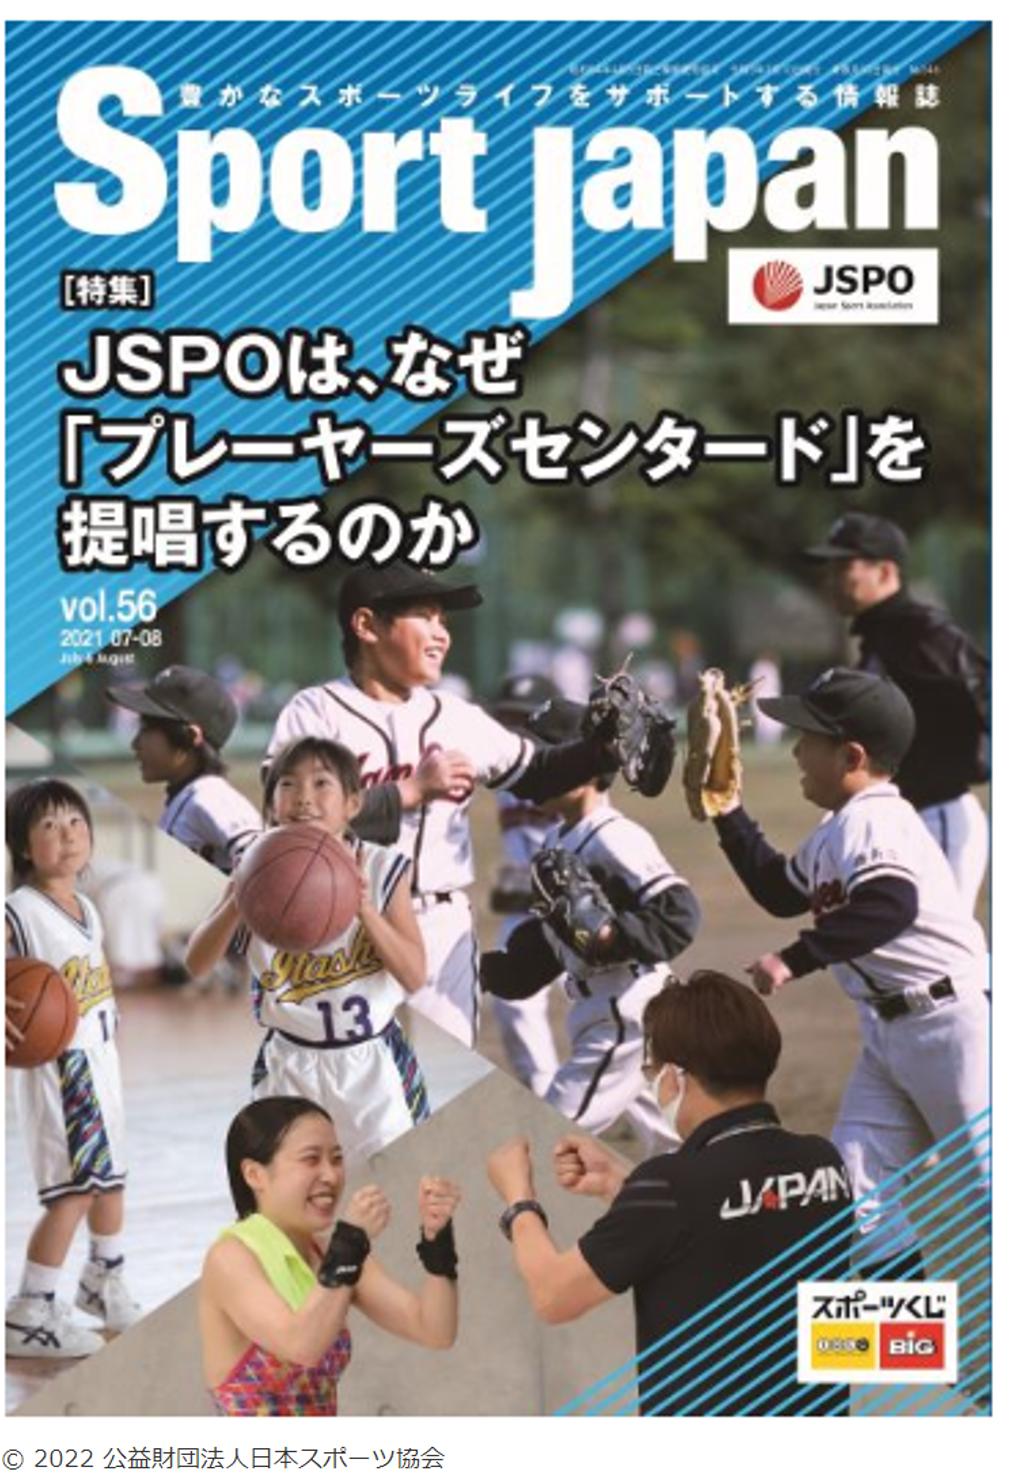 Sport Japan記事 JSPOはなぜ「プレーヤーズセンタード」を提唱するのか